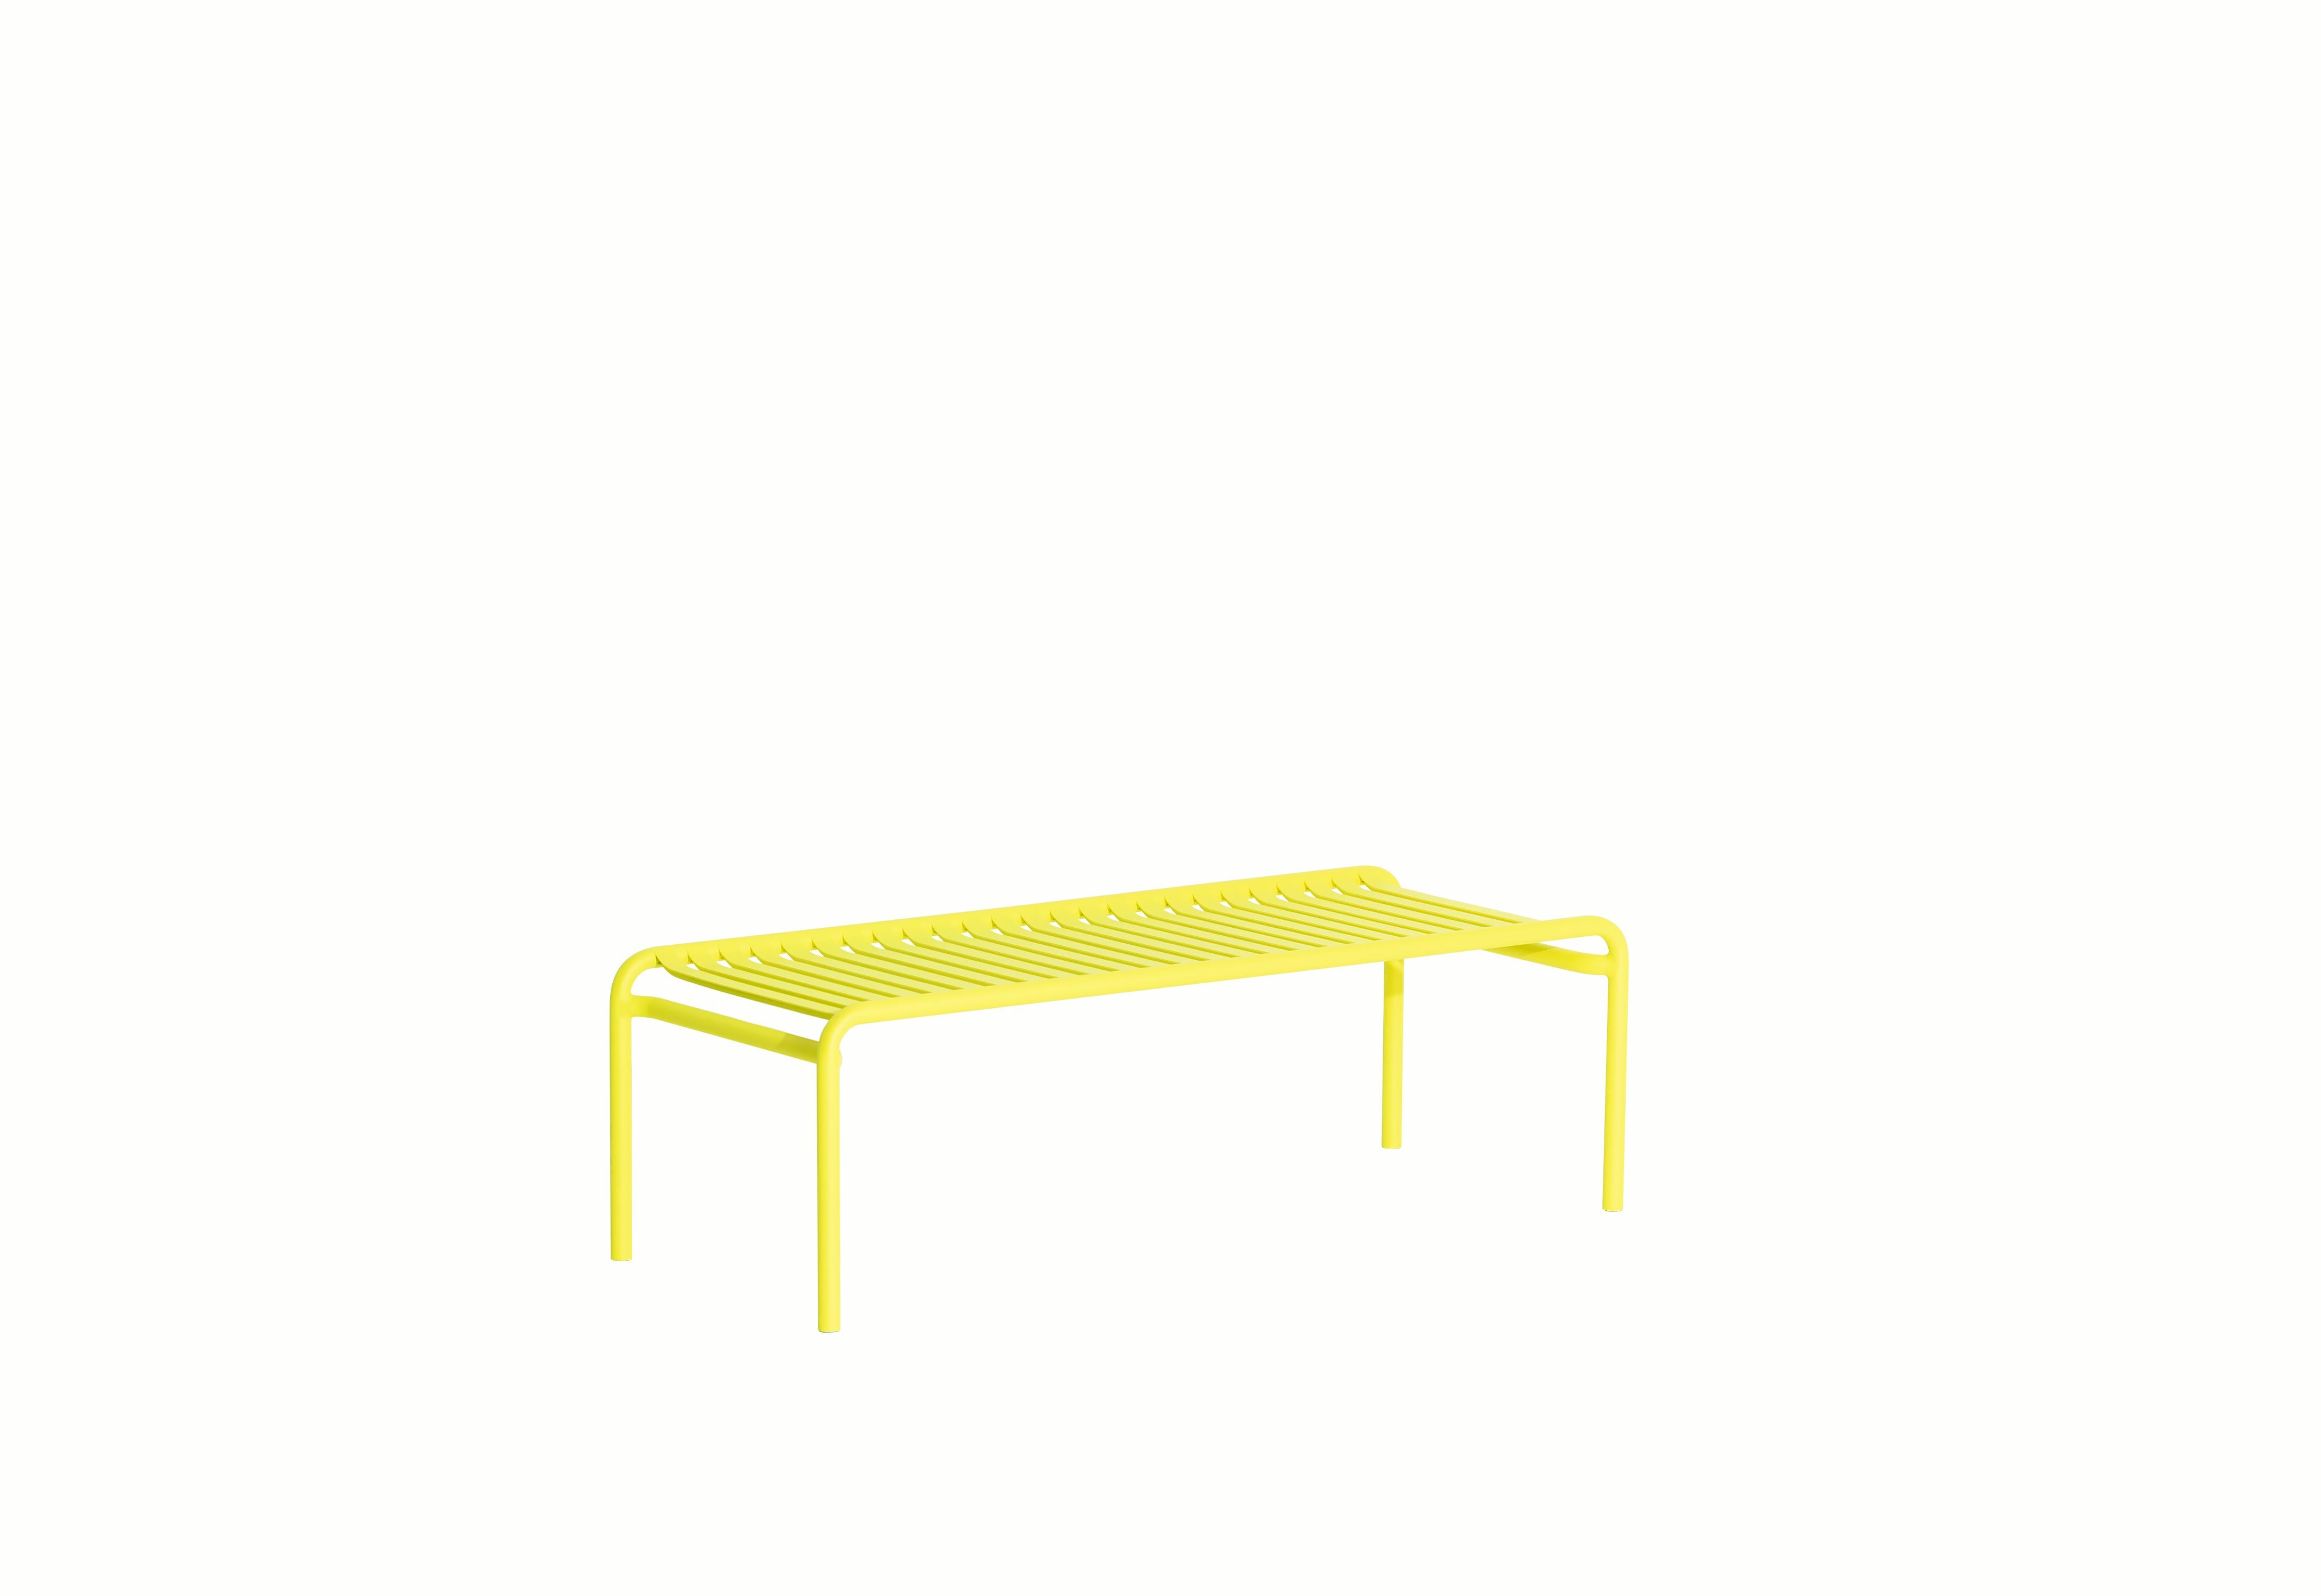 Petite Friture Week-End Long Coffee Table en aluminium jaune par Studio BrichetZiegler, 2017

La collection week-end est une gamme complète de mobilier d'extérieur, en peinture époxy aluminium grainé, finition mate, qui comprend 18 fonctions et 8